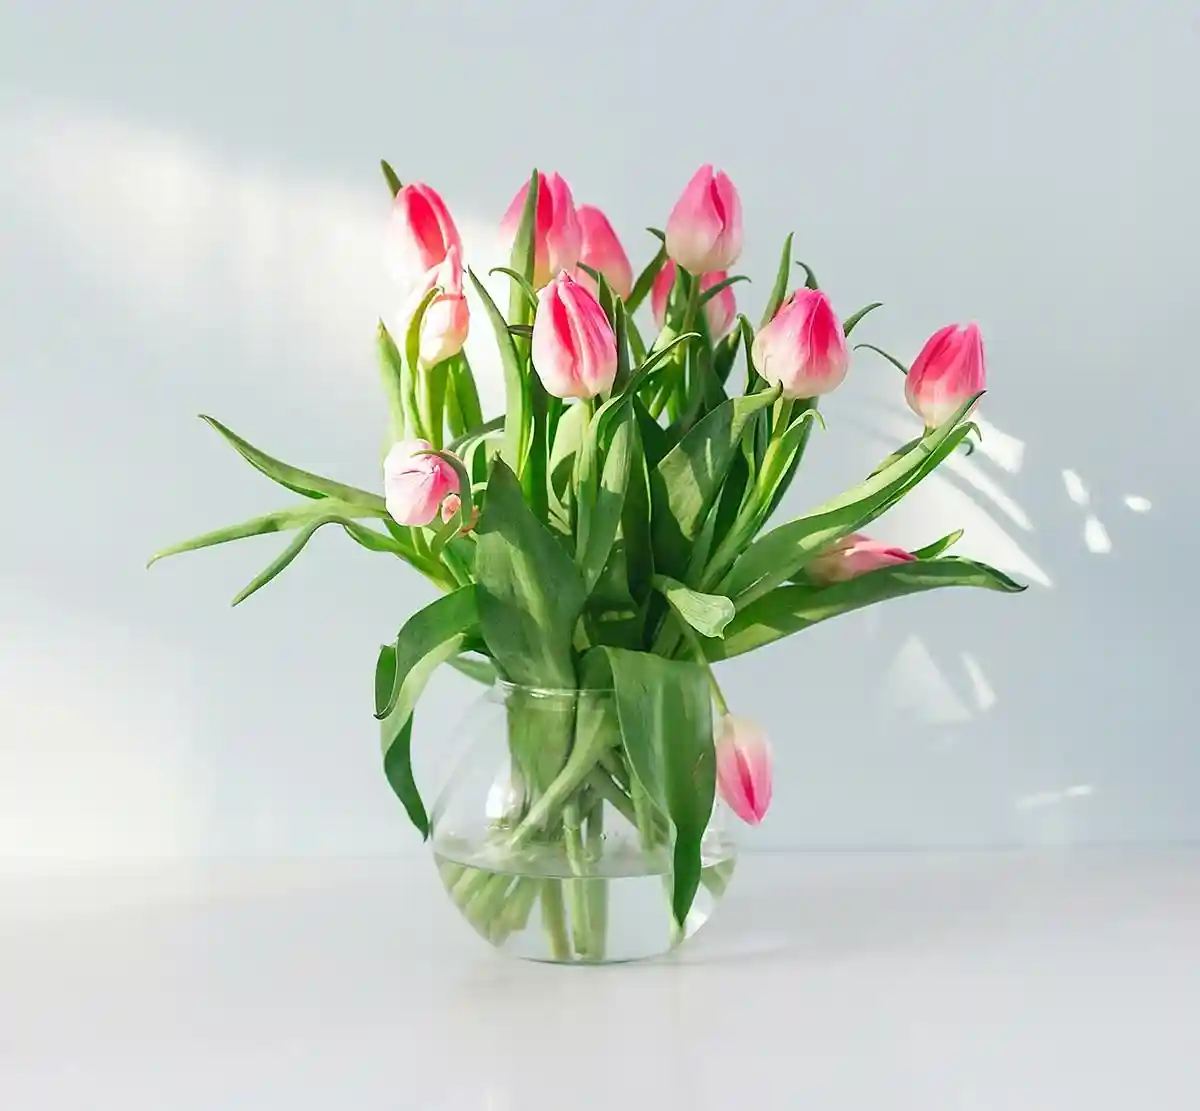 6 советов, как сохранить свежесть тюльпанов. Фото: unsplash.com